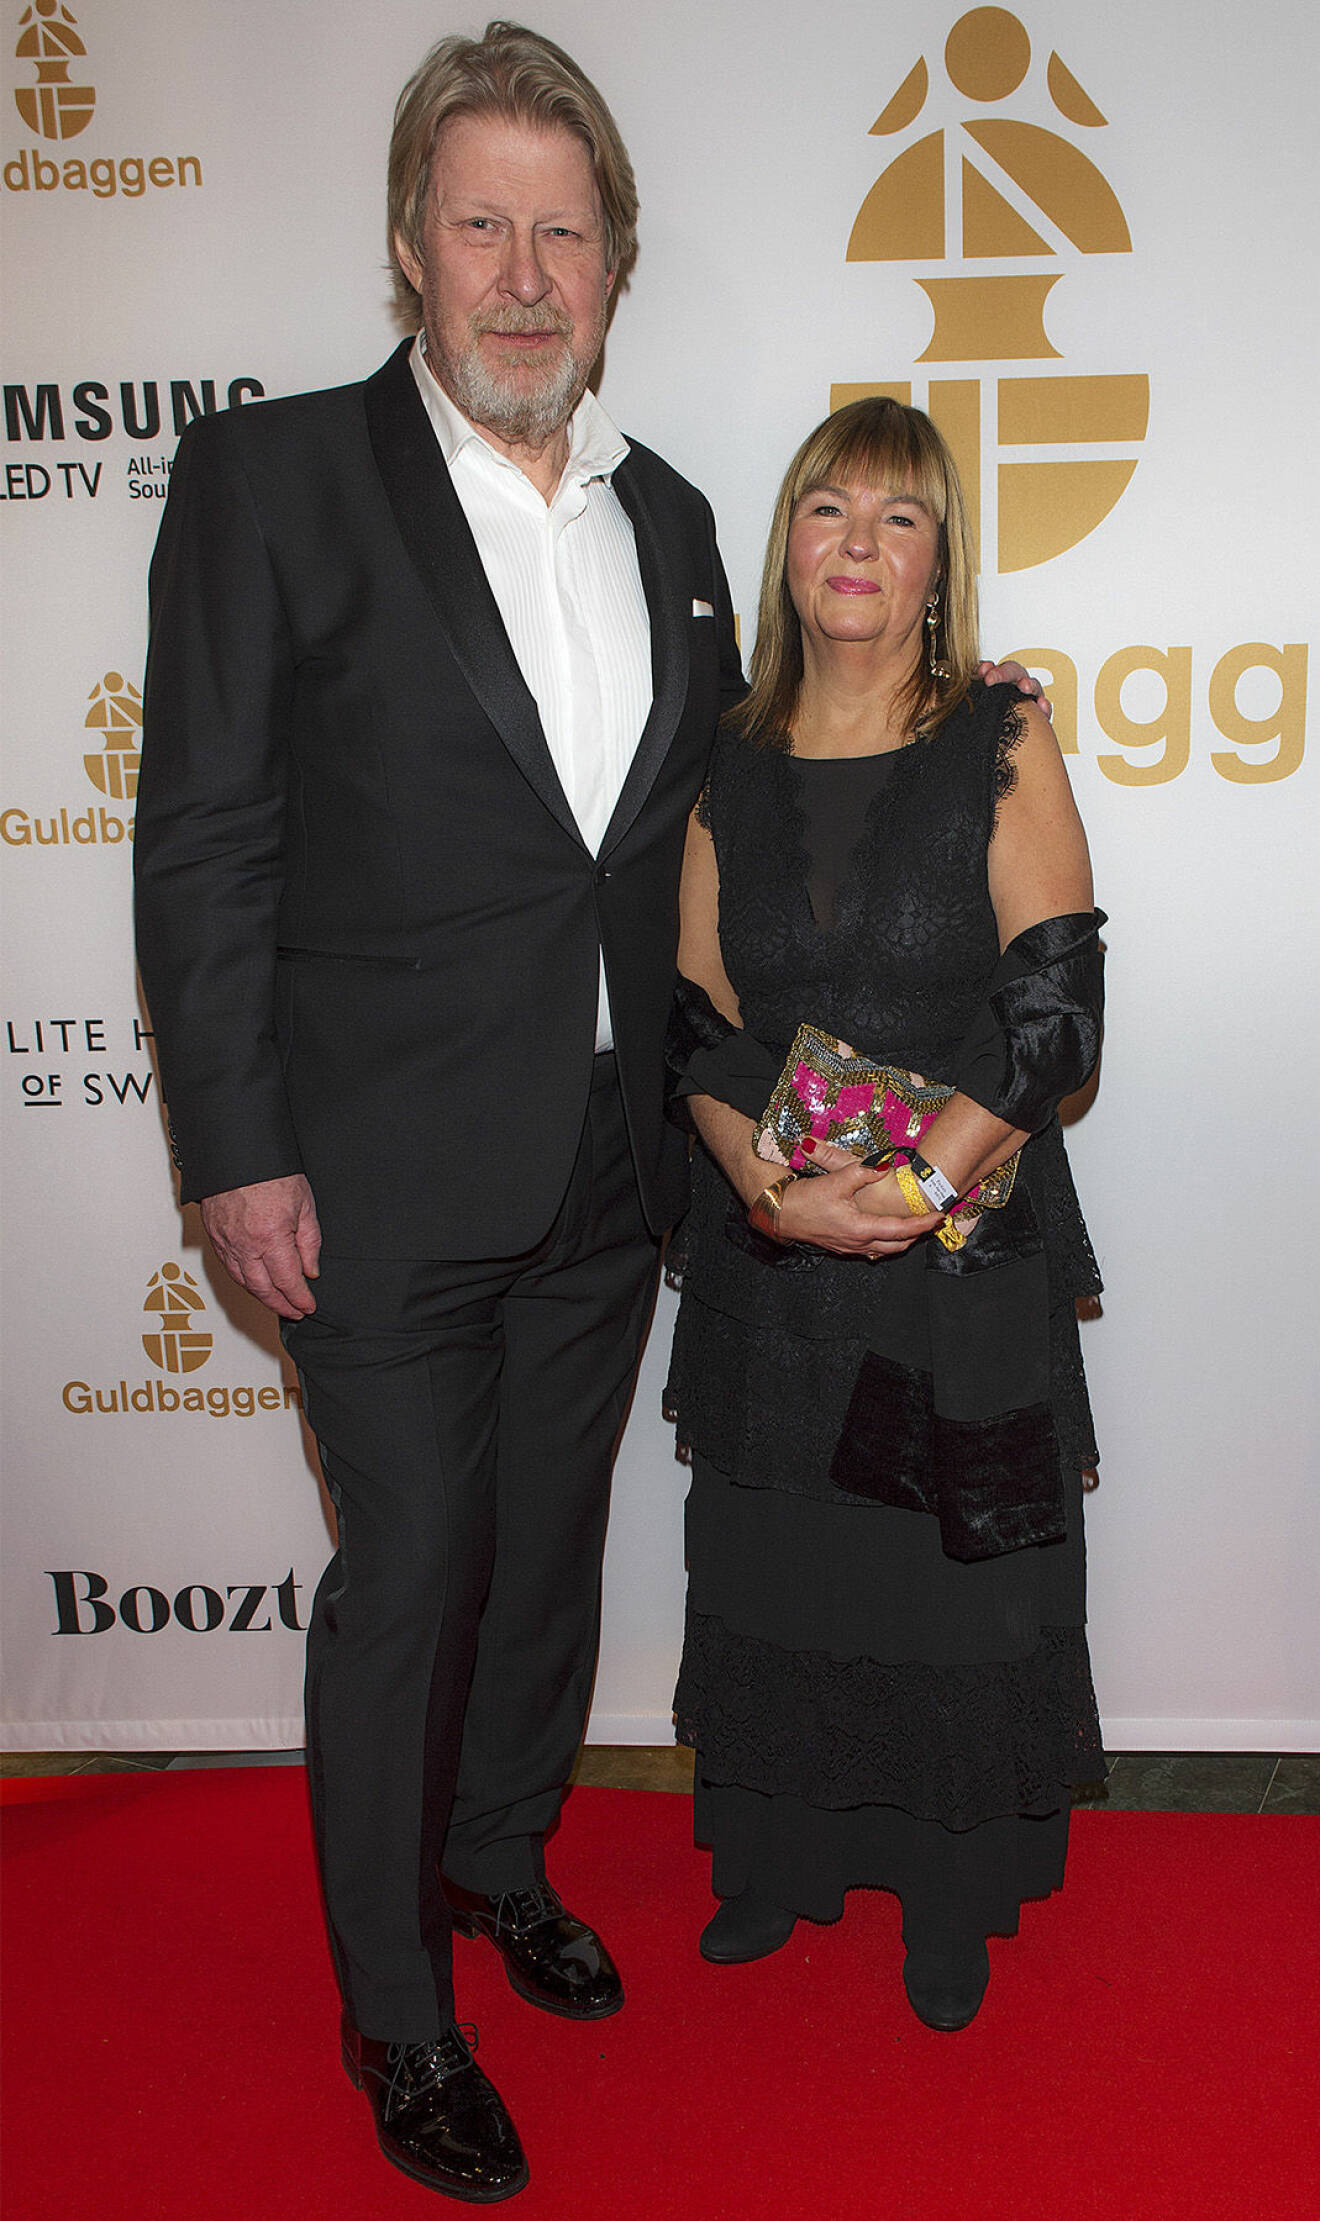  Rolf Lassgård och Birgitta Lassgård på röda mattan på Guldbaggen 2018